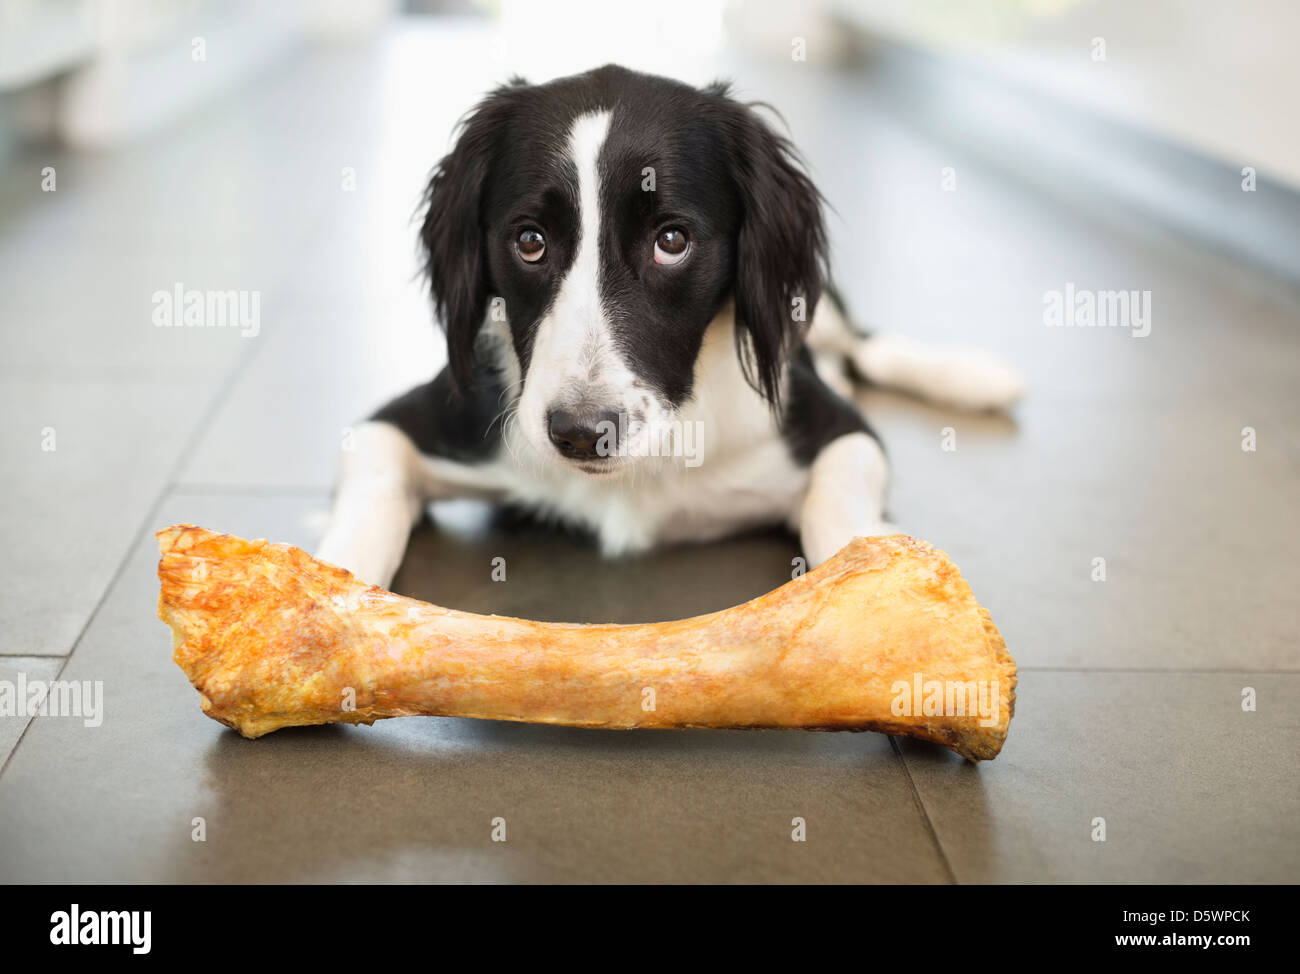 Hund Essen Knochen am Boden Stockfoto